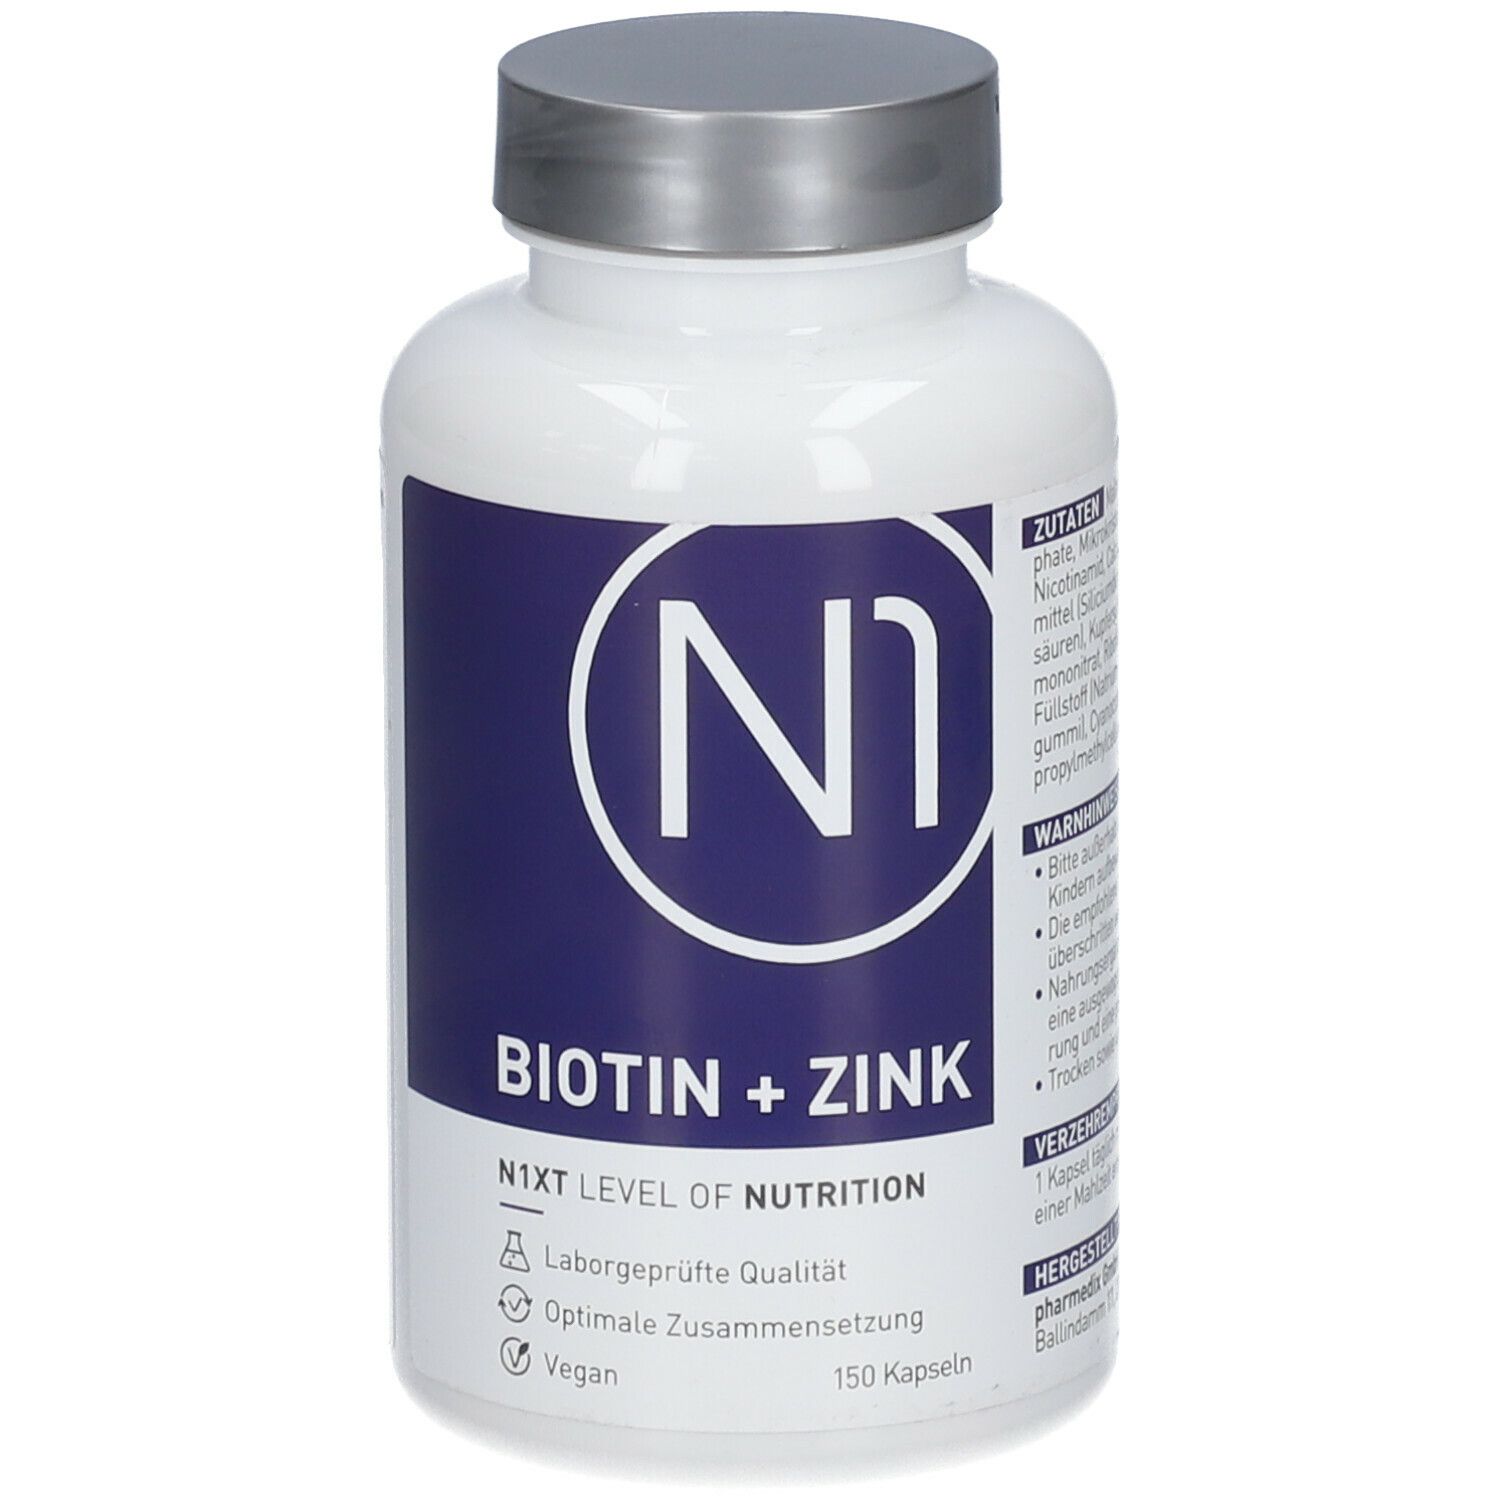 N1 BIOTIN + ZINK